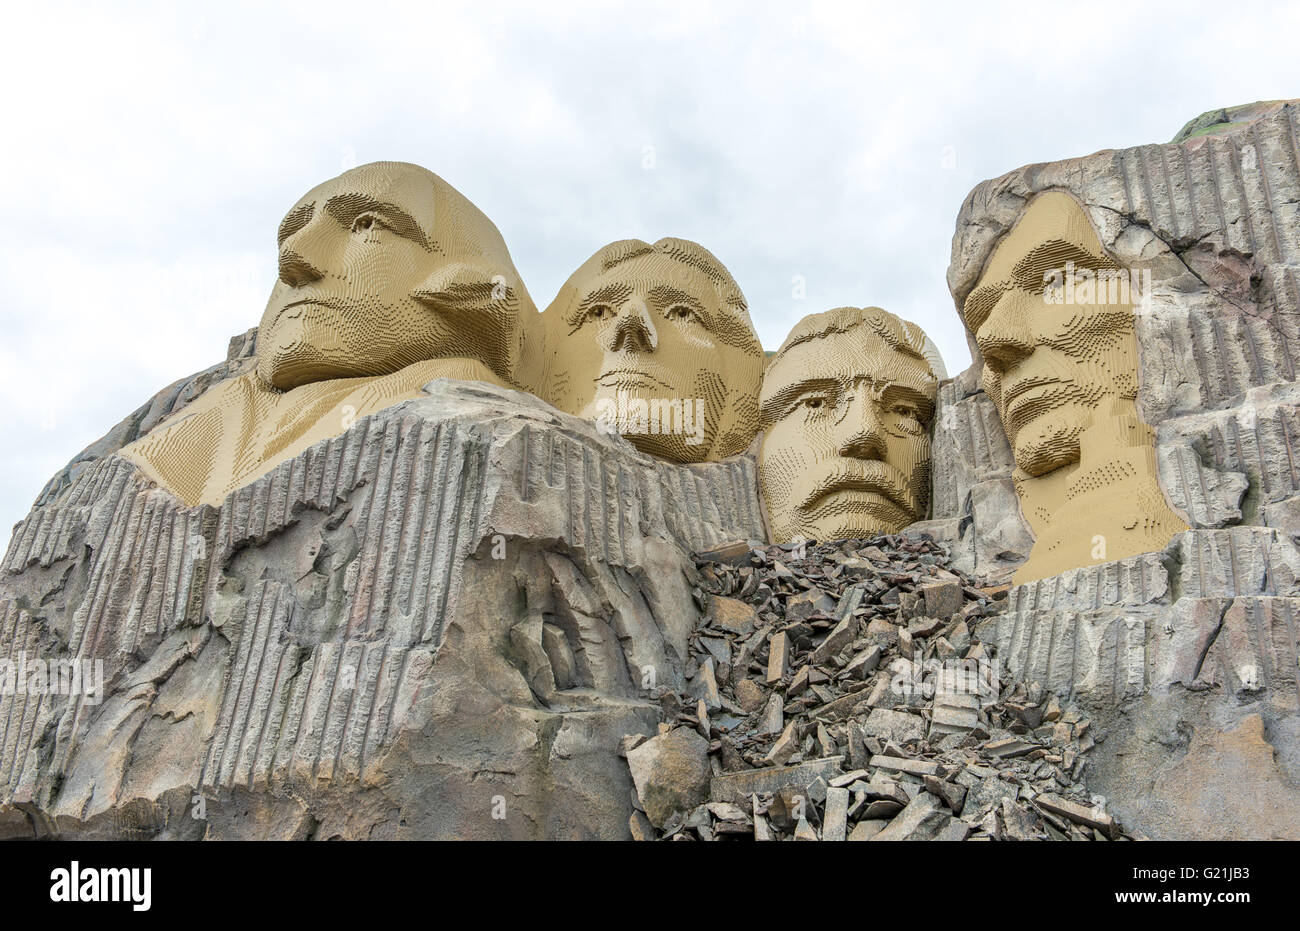 Portraits de Rock quatre présidents américains sur le Mont Rushmore, réplique faite de briques Lego, Legoland BILLUND, Danemark Banque D'Images